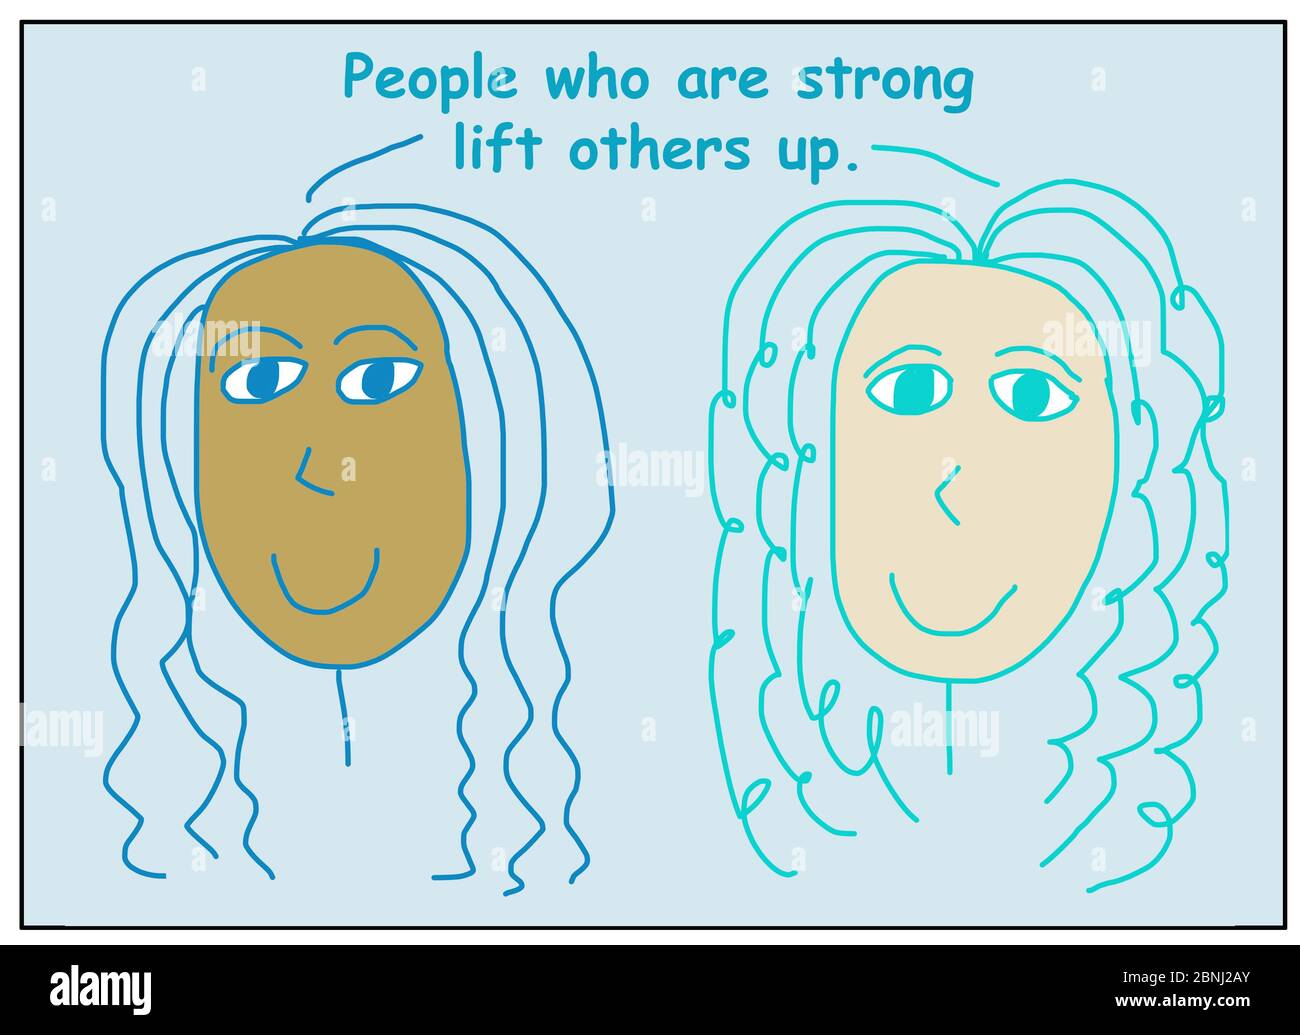 Farbe Cartoon von zwei lächelnden und ethnisch unterschiedlichen Frauen sagen, dass Menschen, die stark sind heben andere auf. Stockfoto